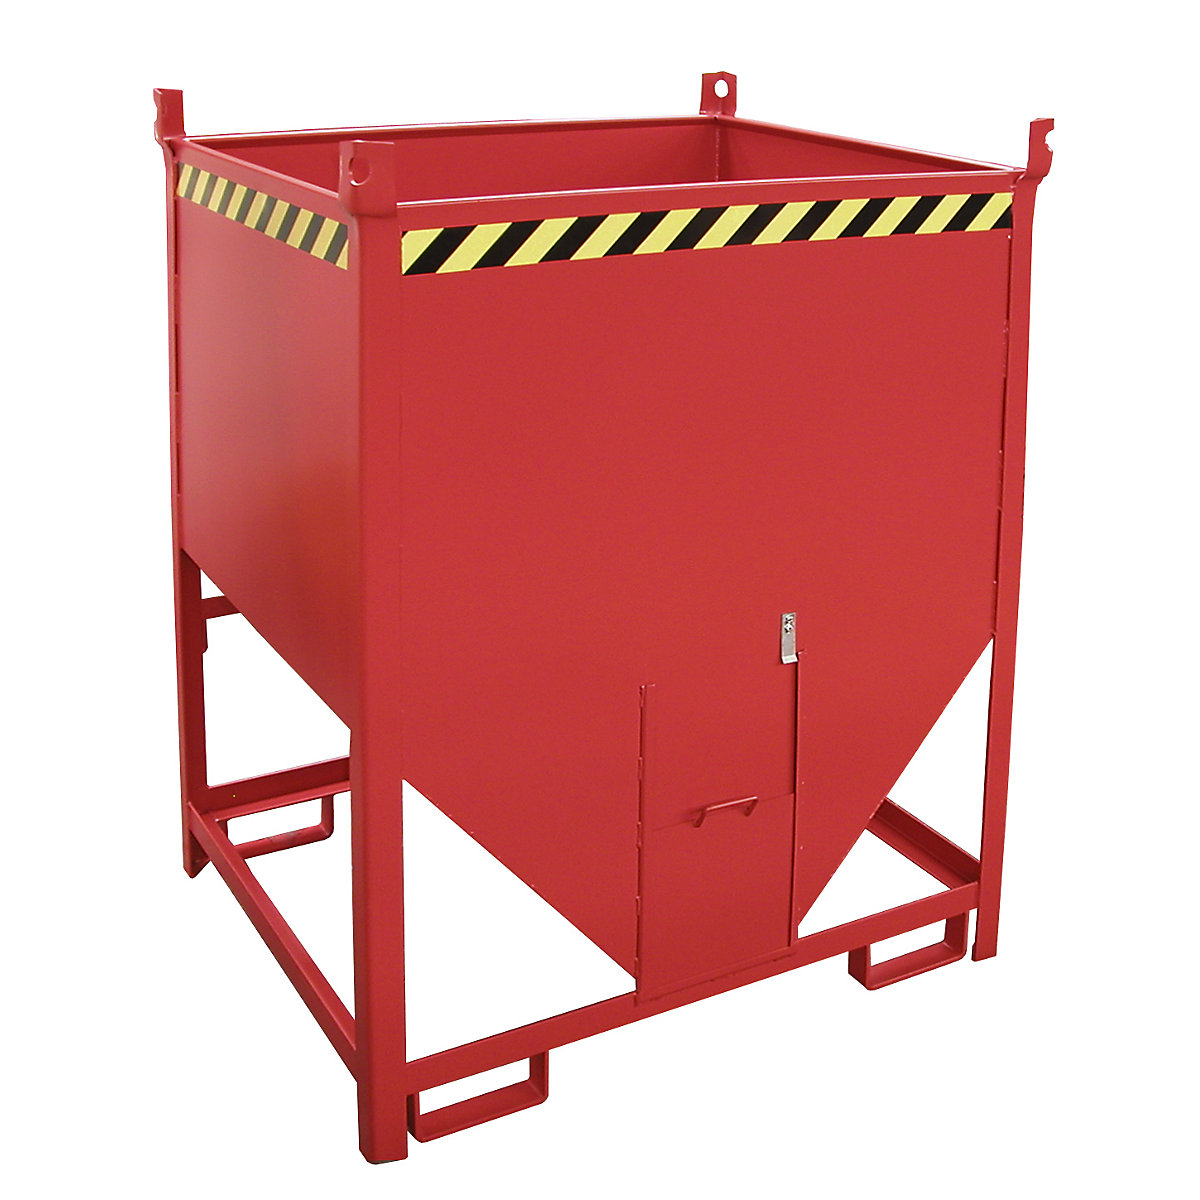 Recipiente de armazenagem – eurokraft pro, volume 1 m³, com fecho de deslize no lado frontal, vermelho fogo RAL 3000-5